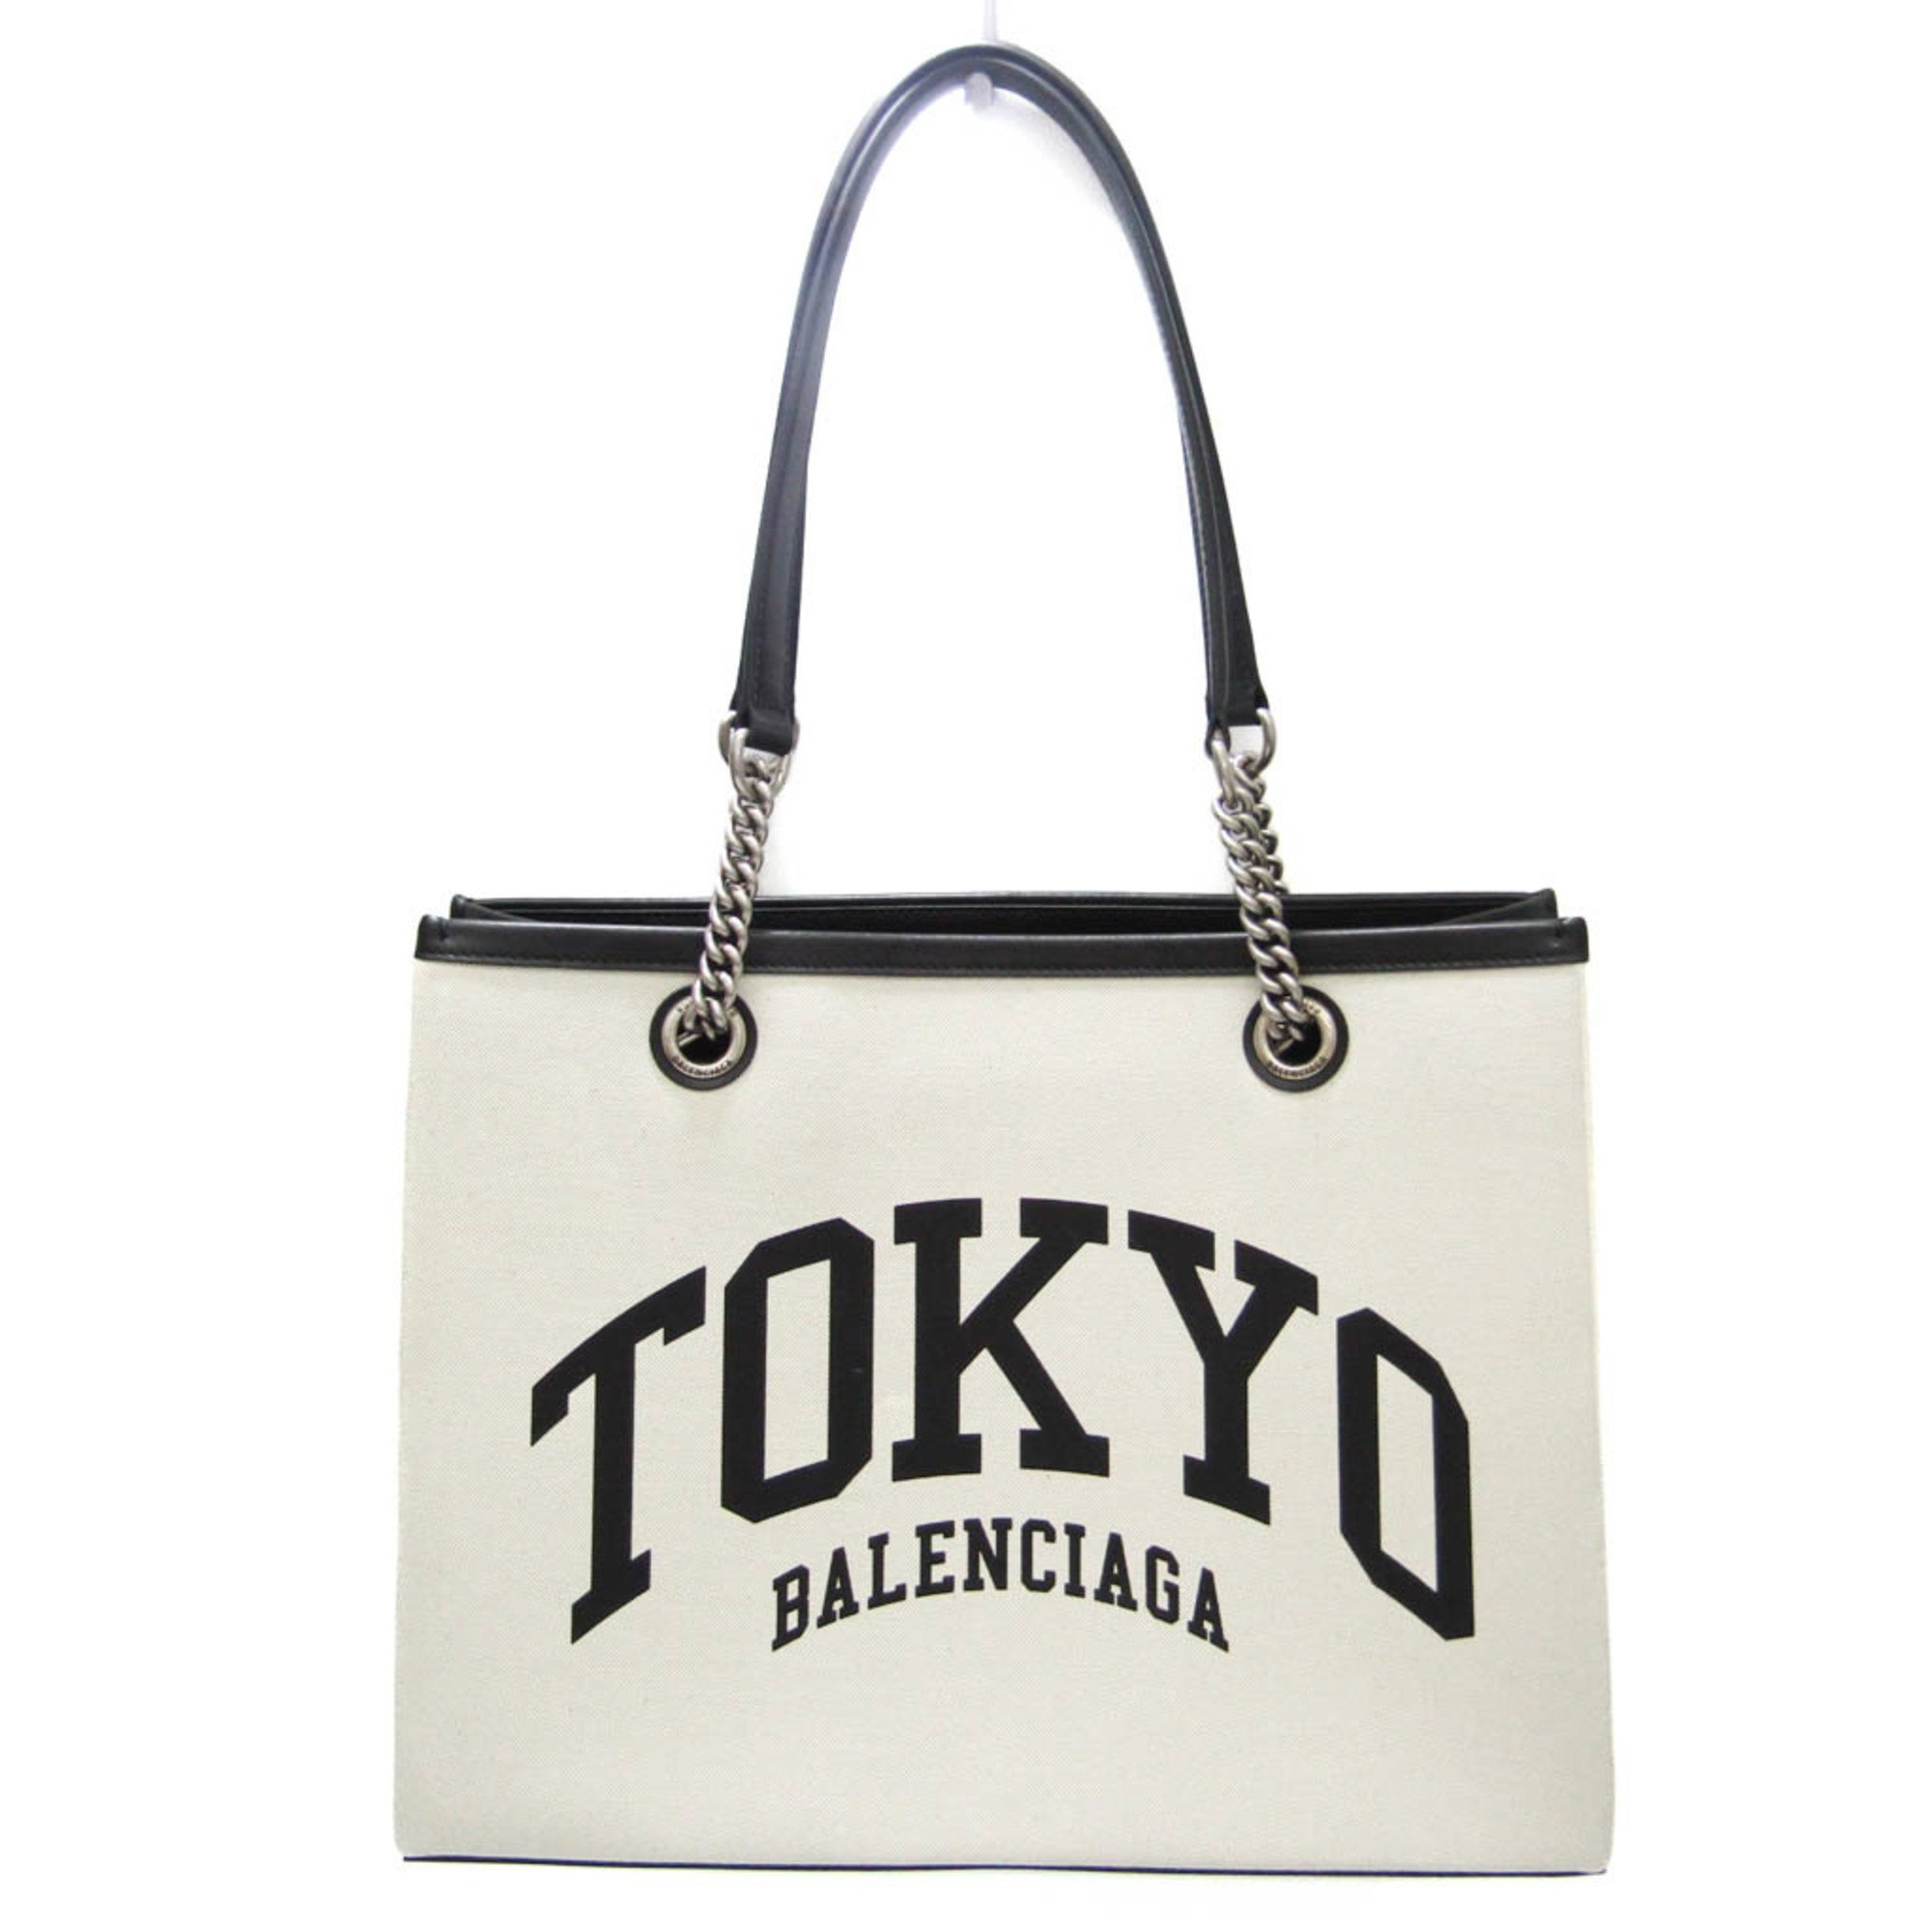 バレンシアガ(Balenciaga) TOKYO Duty Free Shopping Bag 759941 レディース レザー,キャンバス  トートバッグ ブラック,オフホワイト | eLADY Globazone